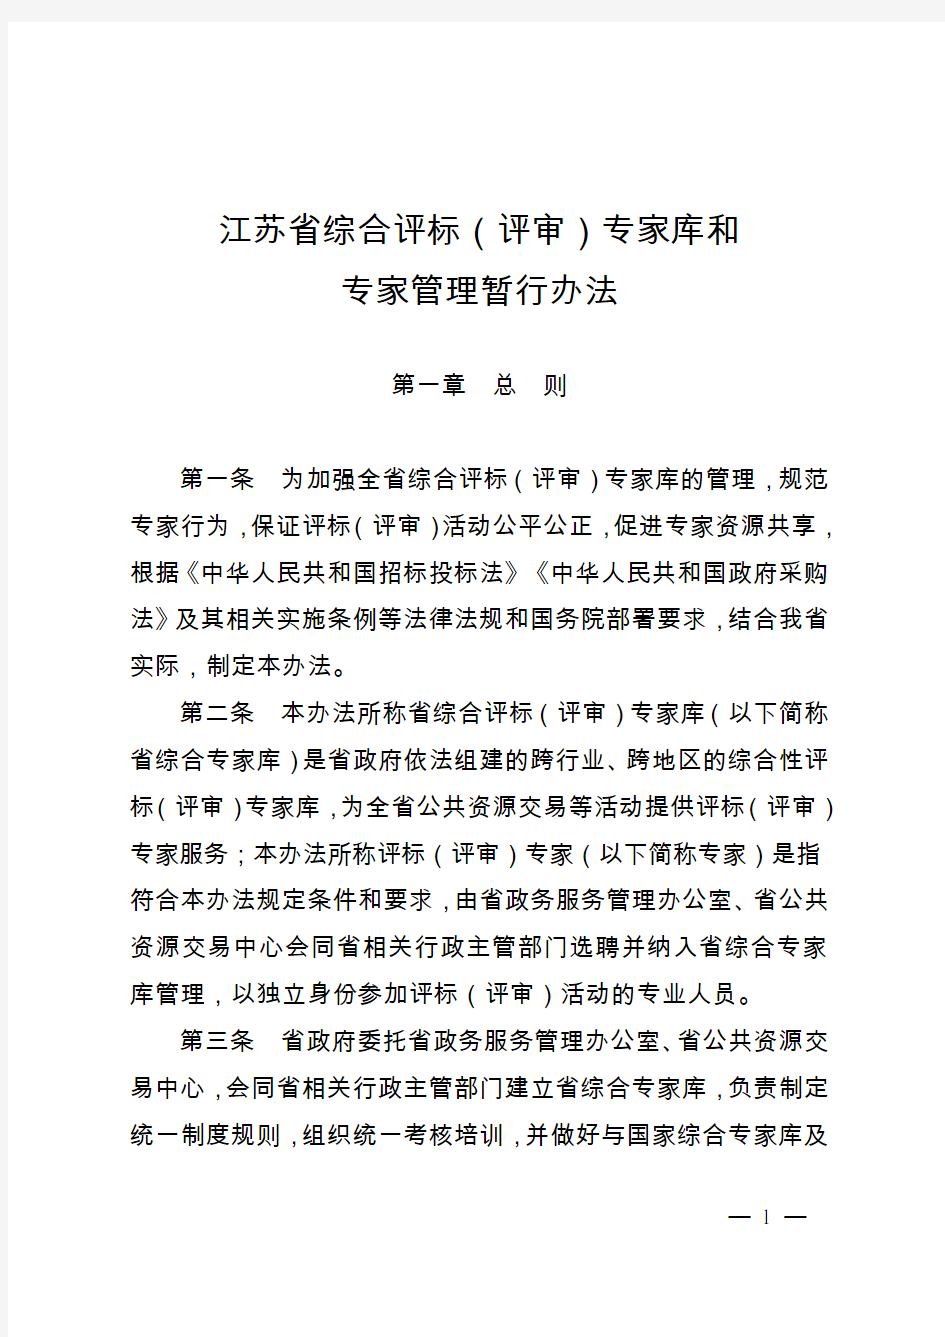 江苏省综合评标(评审)专家库和专家管理暂行办法